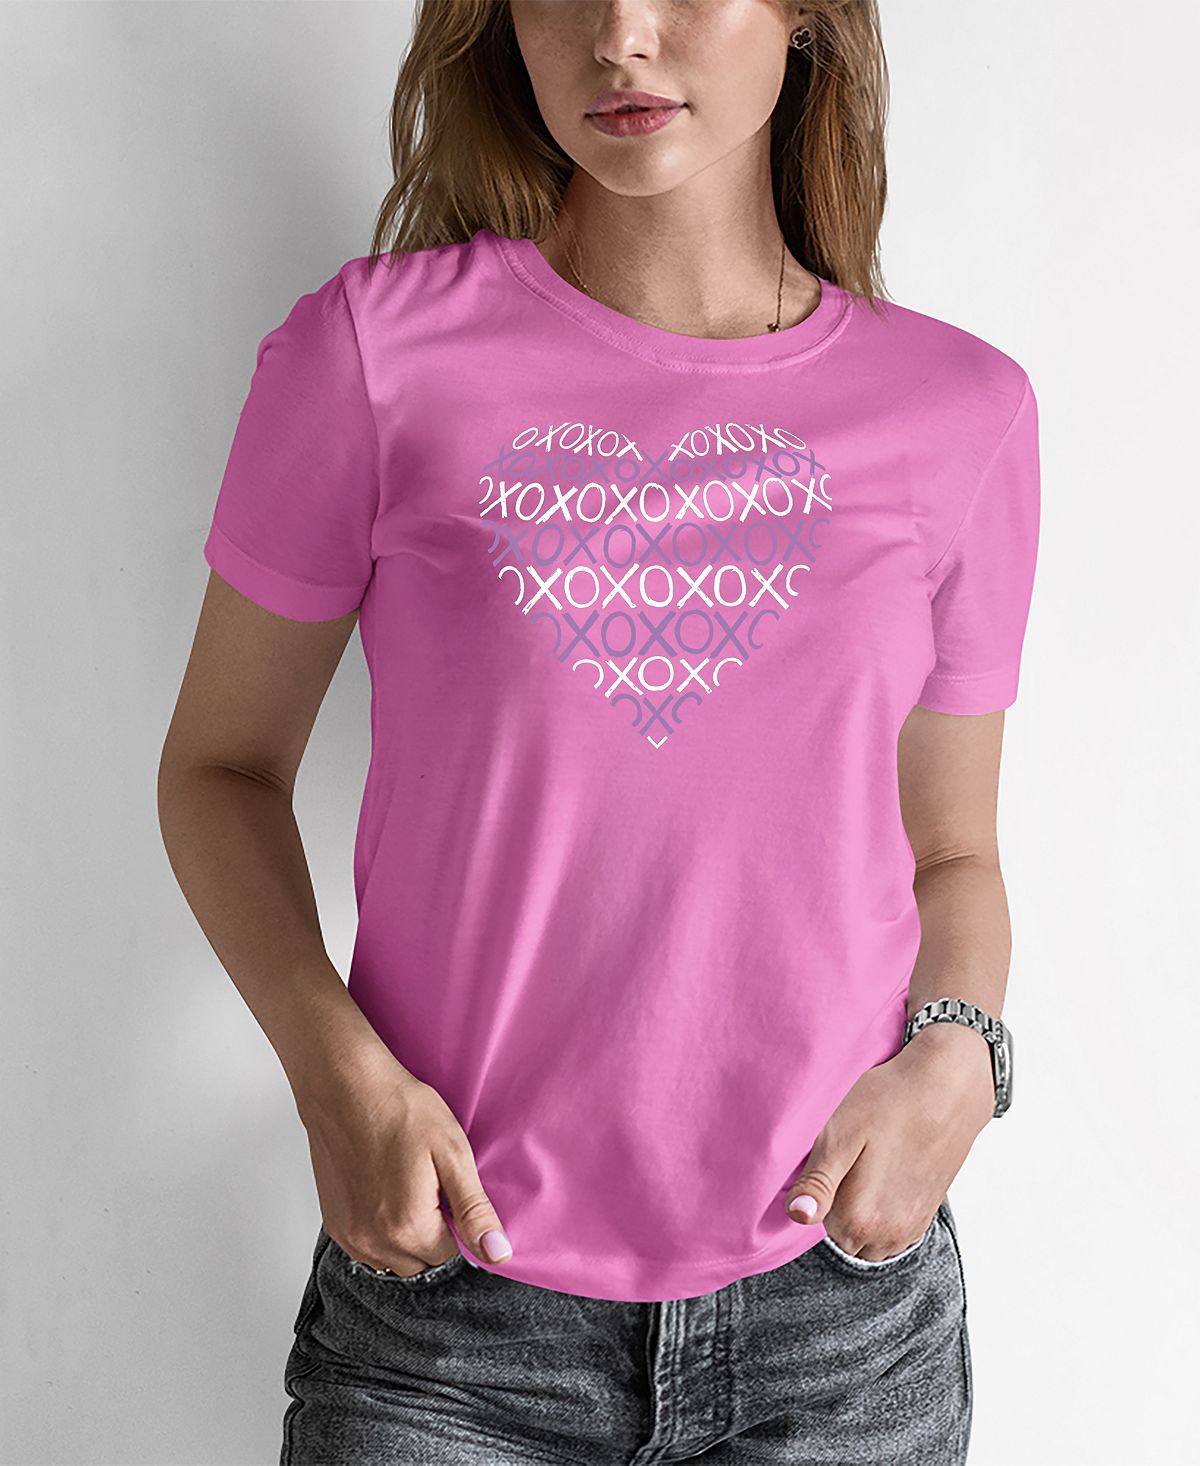 Женская футболка word art xoxo heart LA Pop Art, розовый женская футболка word art кошка la pop art розовый